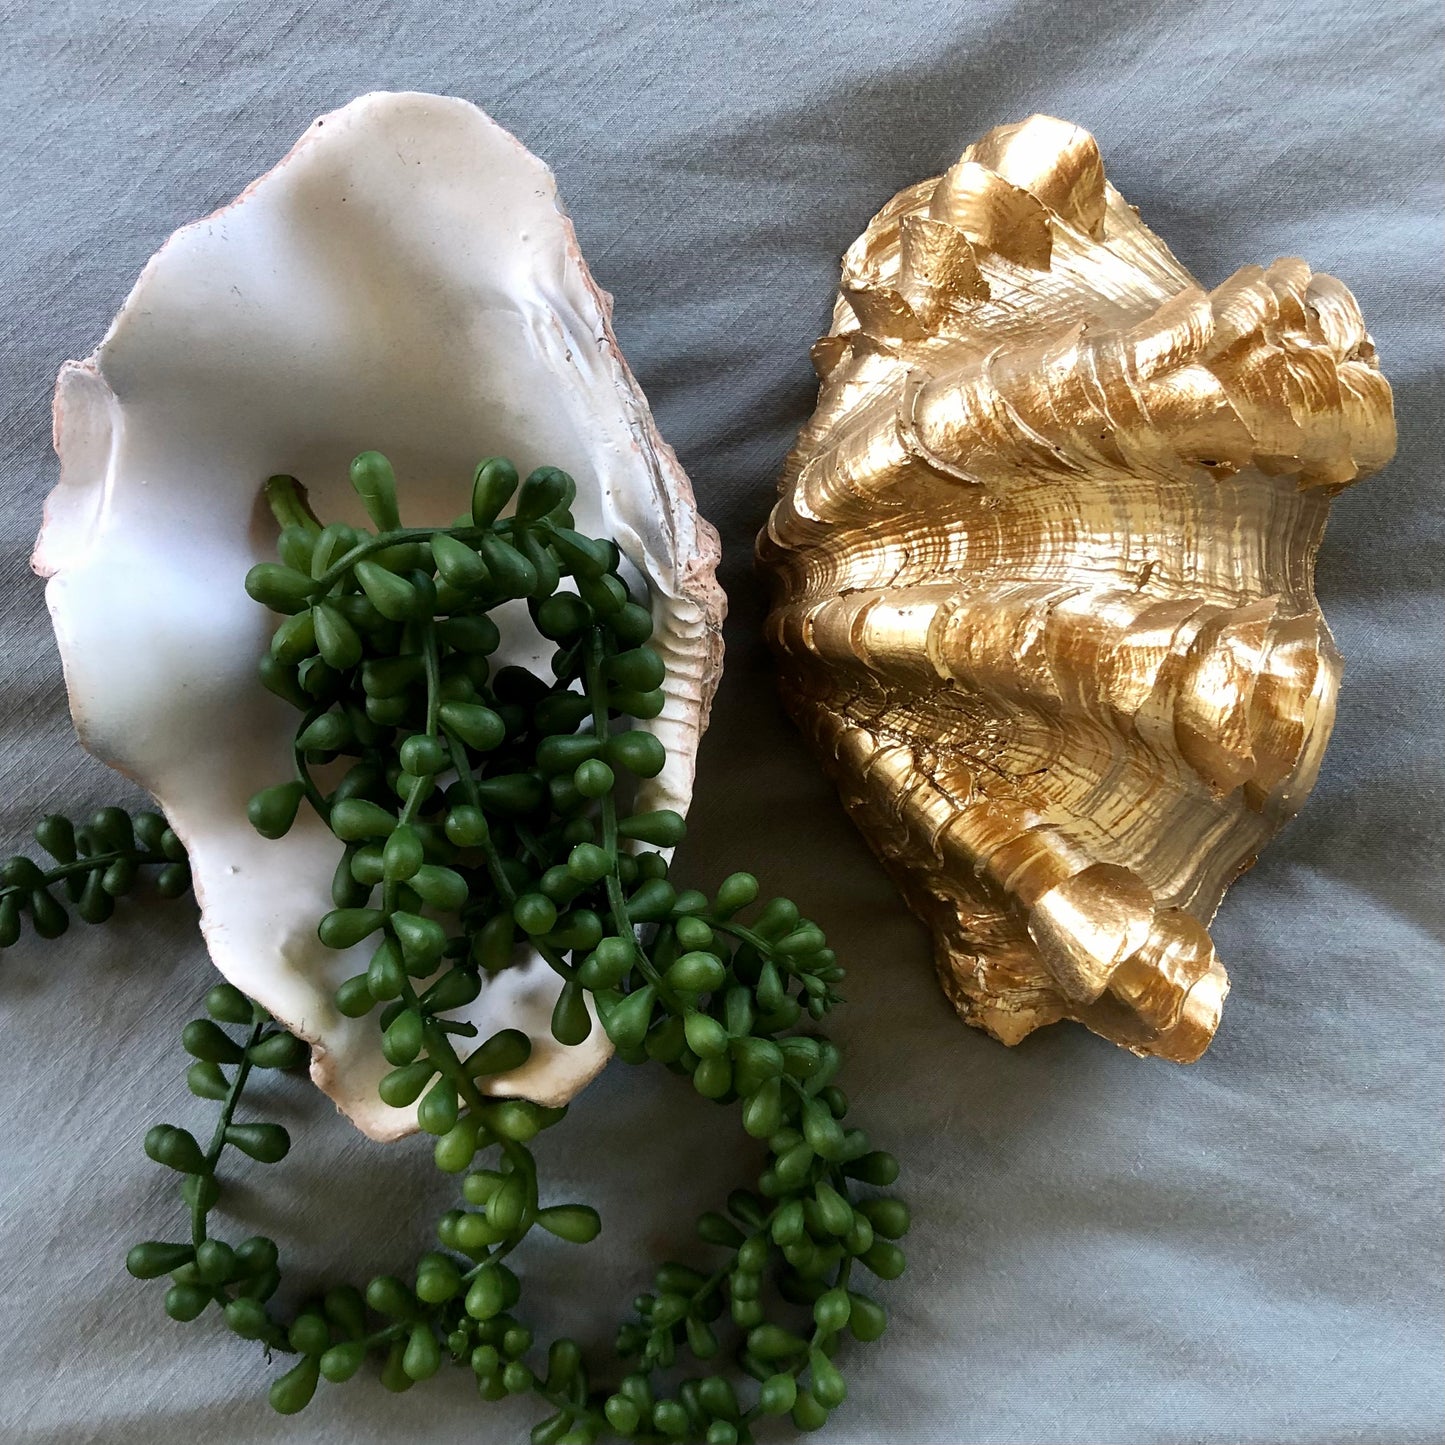 Gold and white coastal decor clam shell bowl / tray